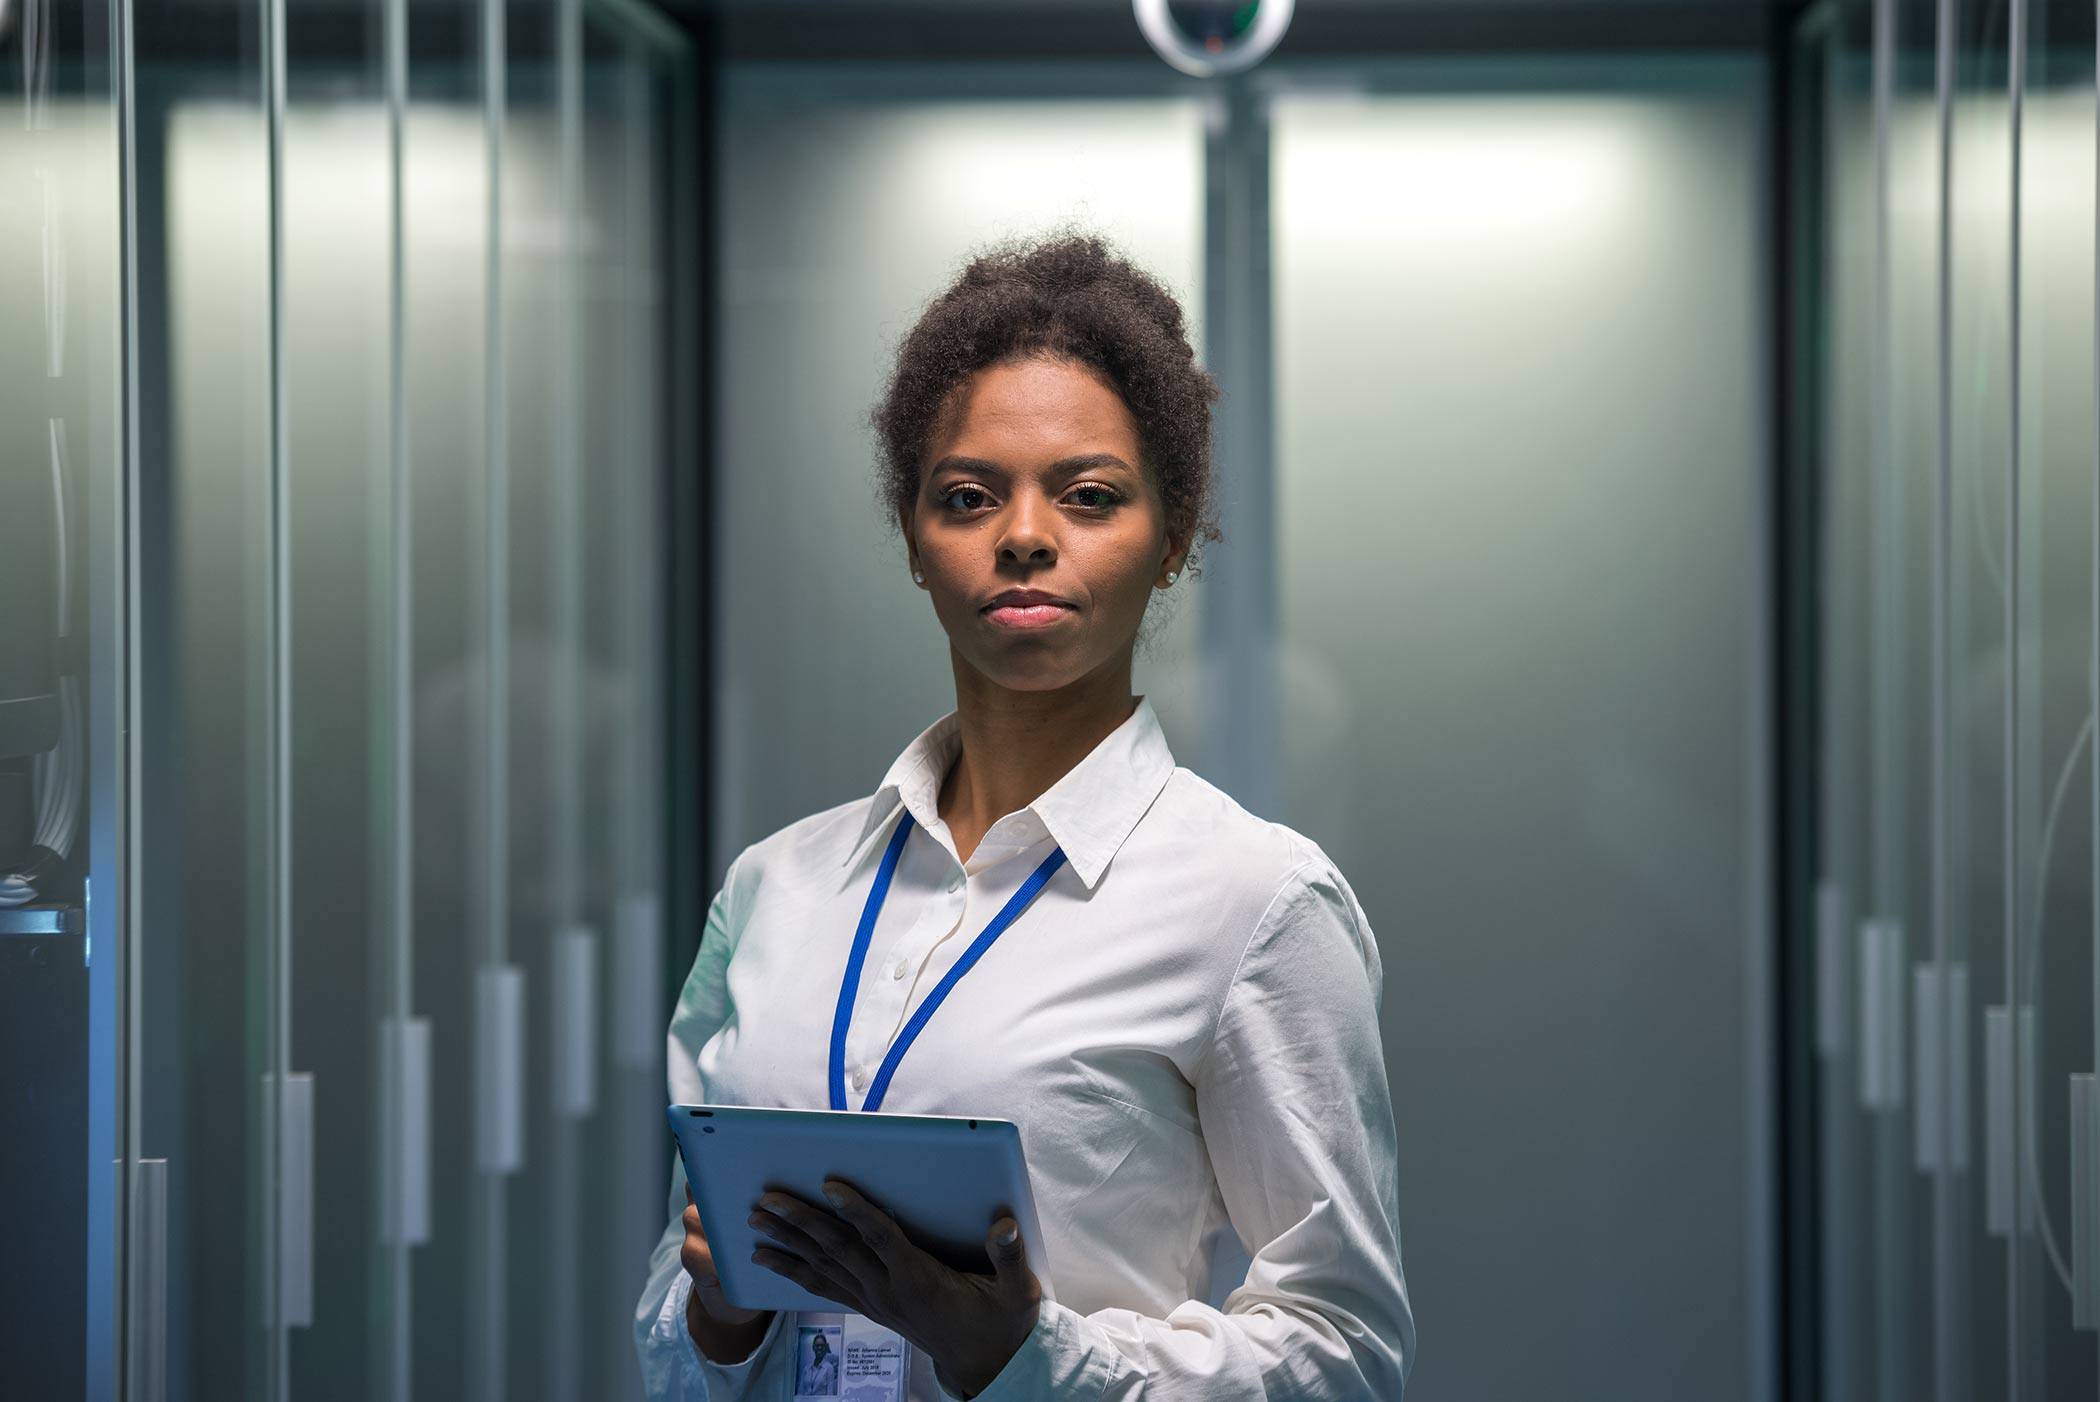 Black female IT worker in server room.